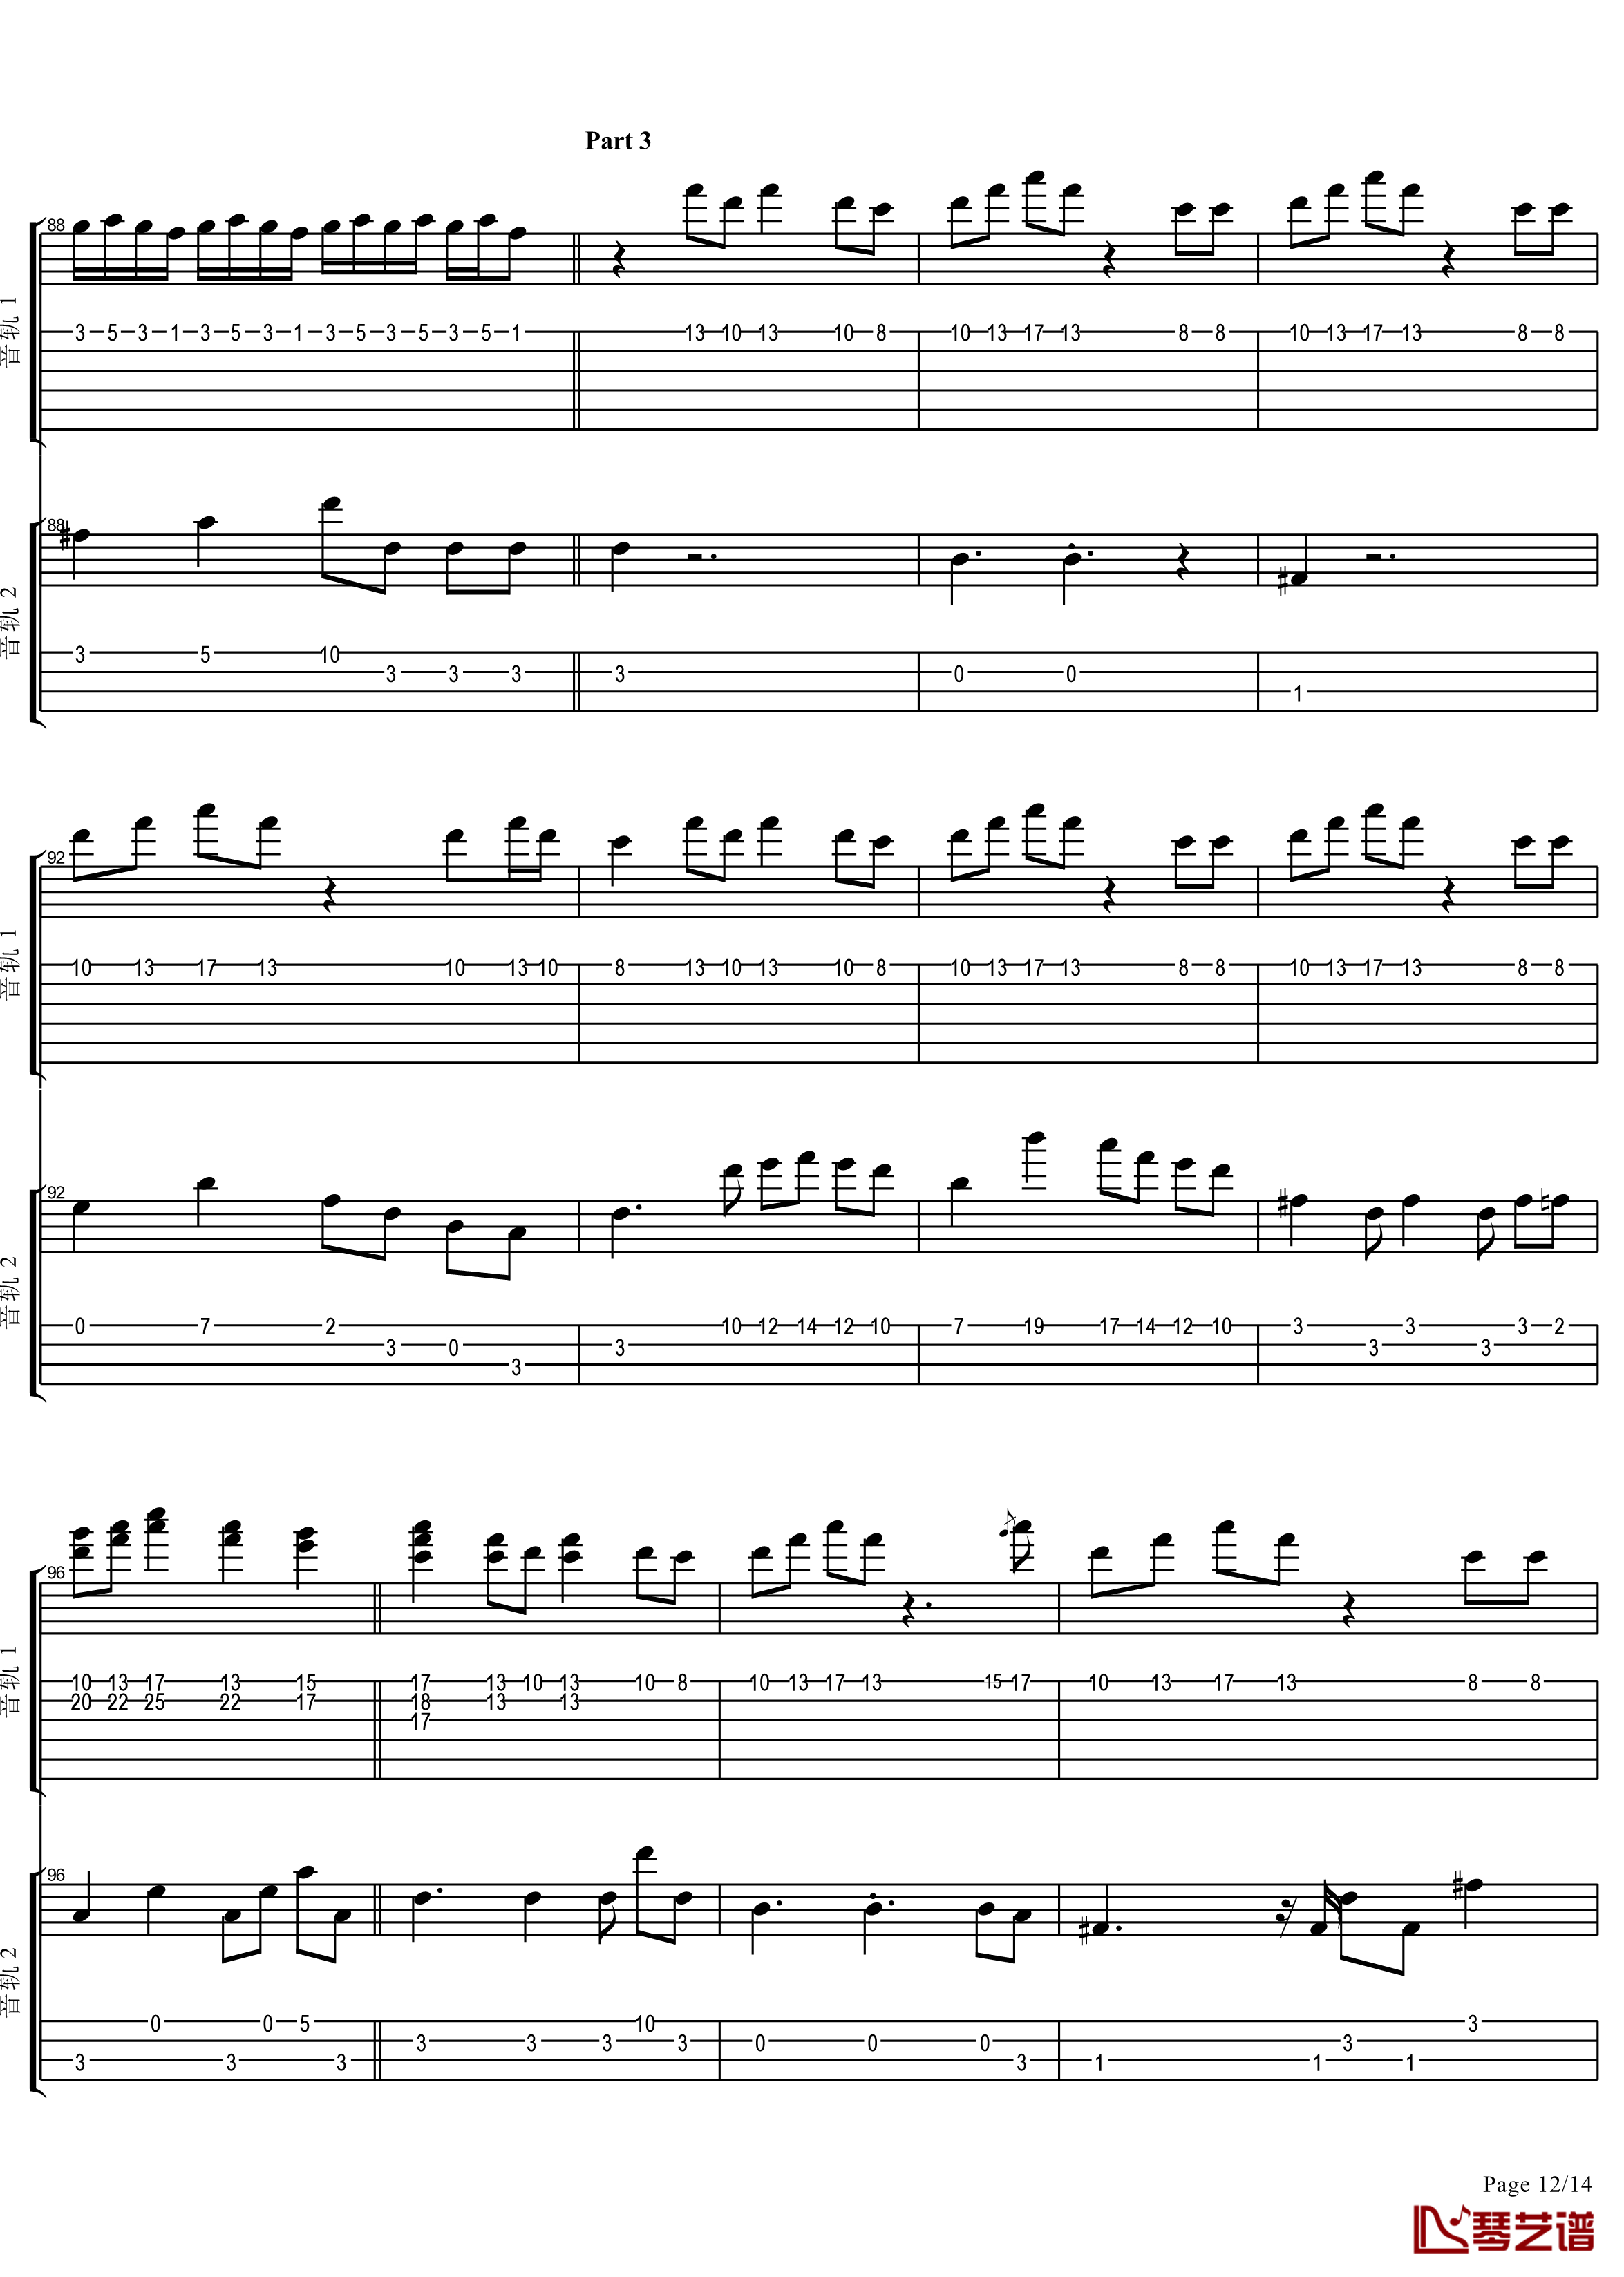 十八般武艺钢琴谱-完美演奏版-王力宏12